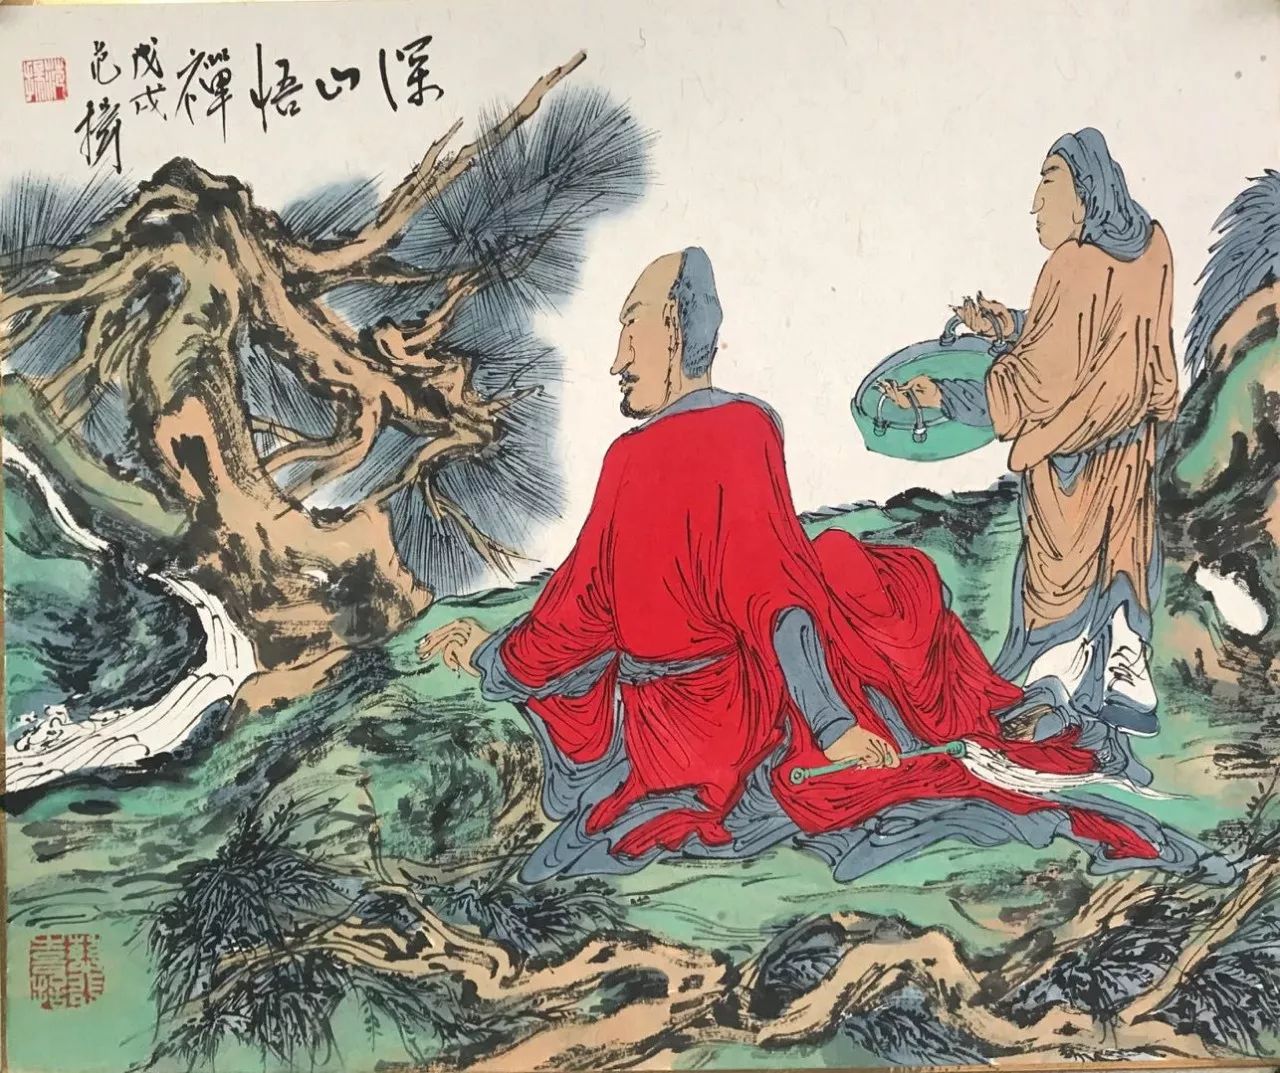 范扬能不能超越叔叔范曾成为中国画坛领军人物赶超白石老人